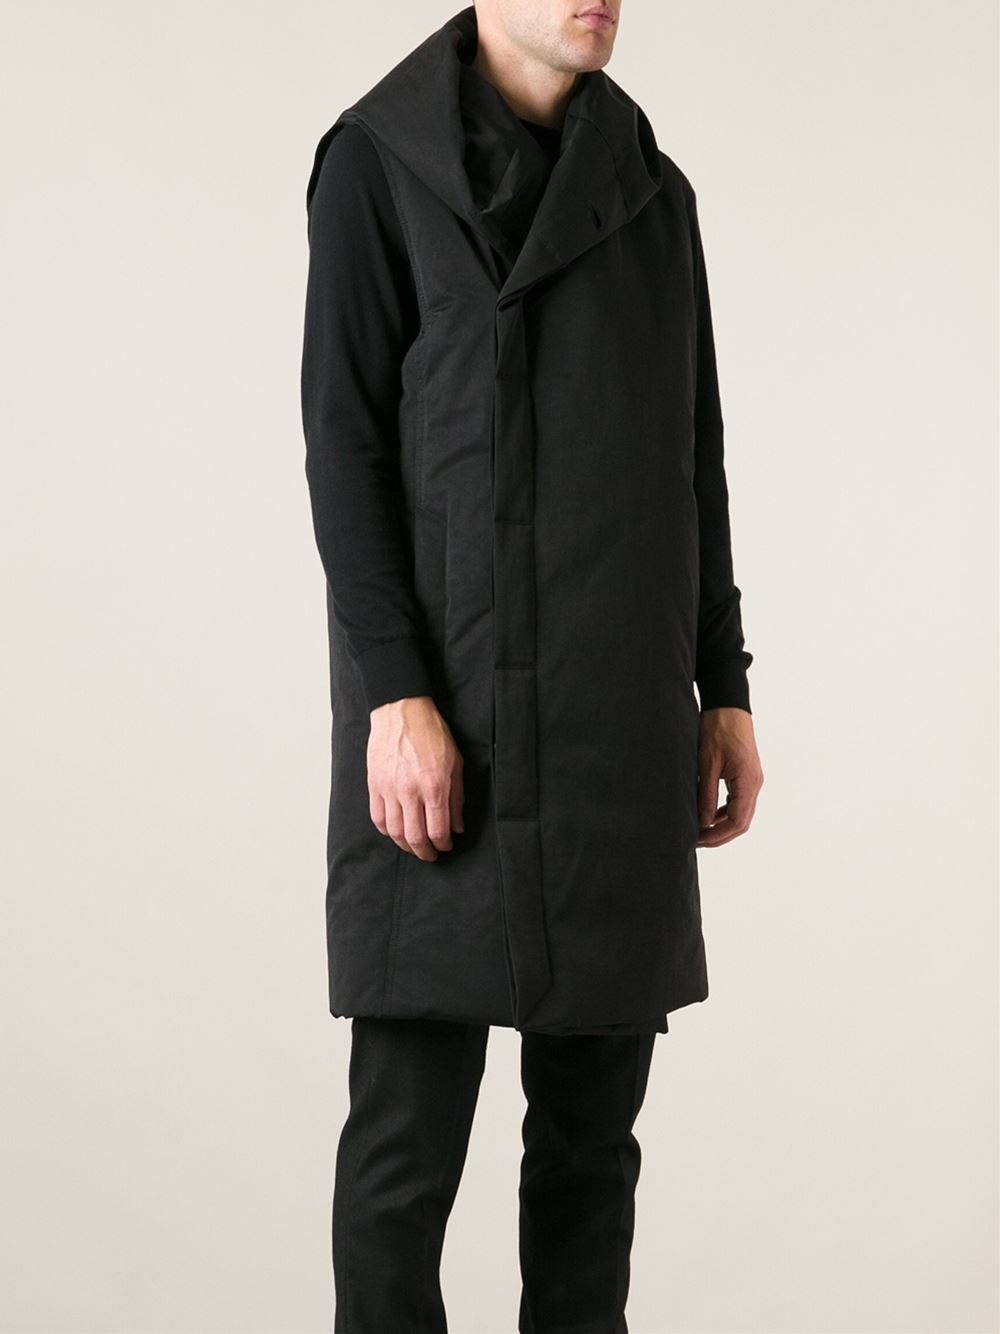 Lyst - Rick Owens Sleeveless Coat in Black for Men